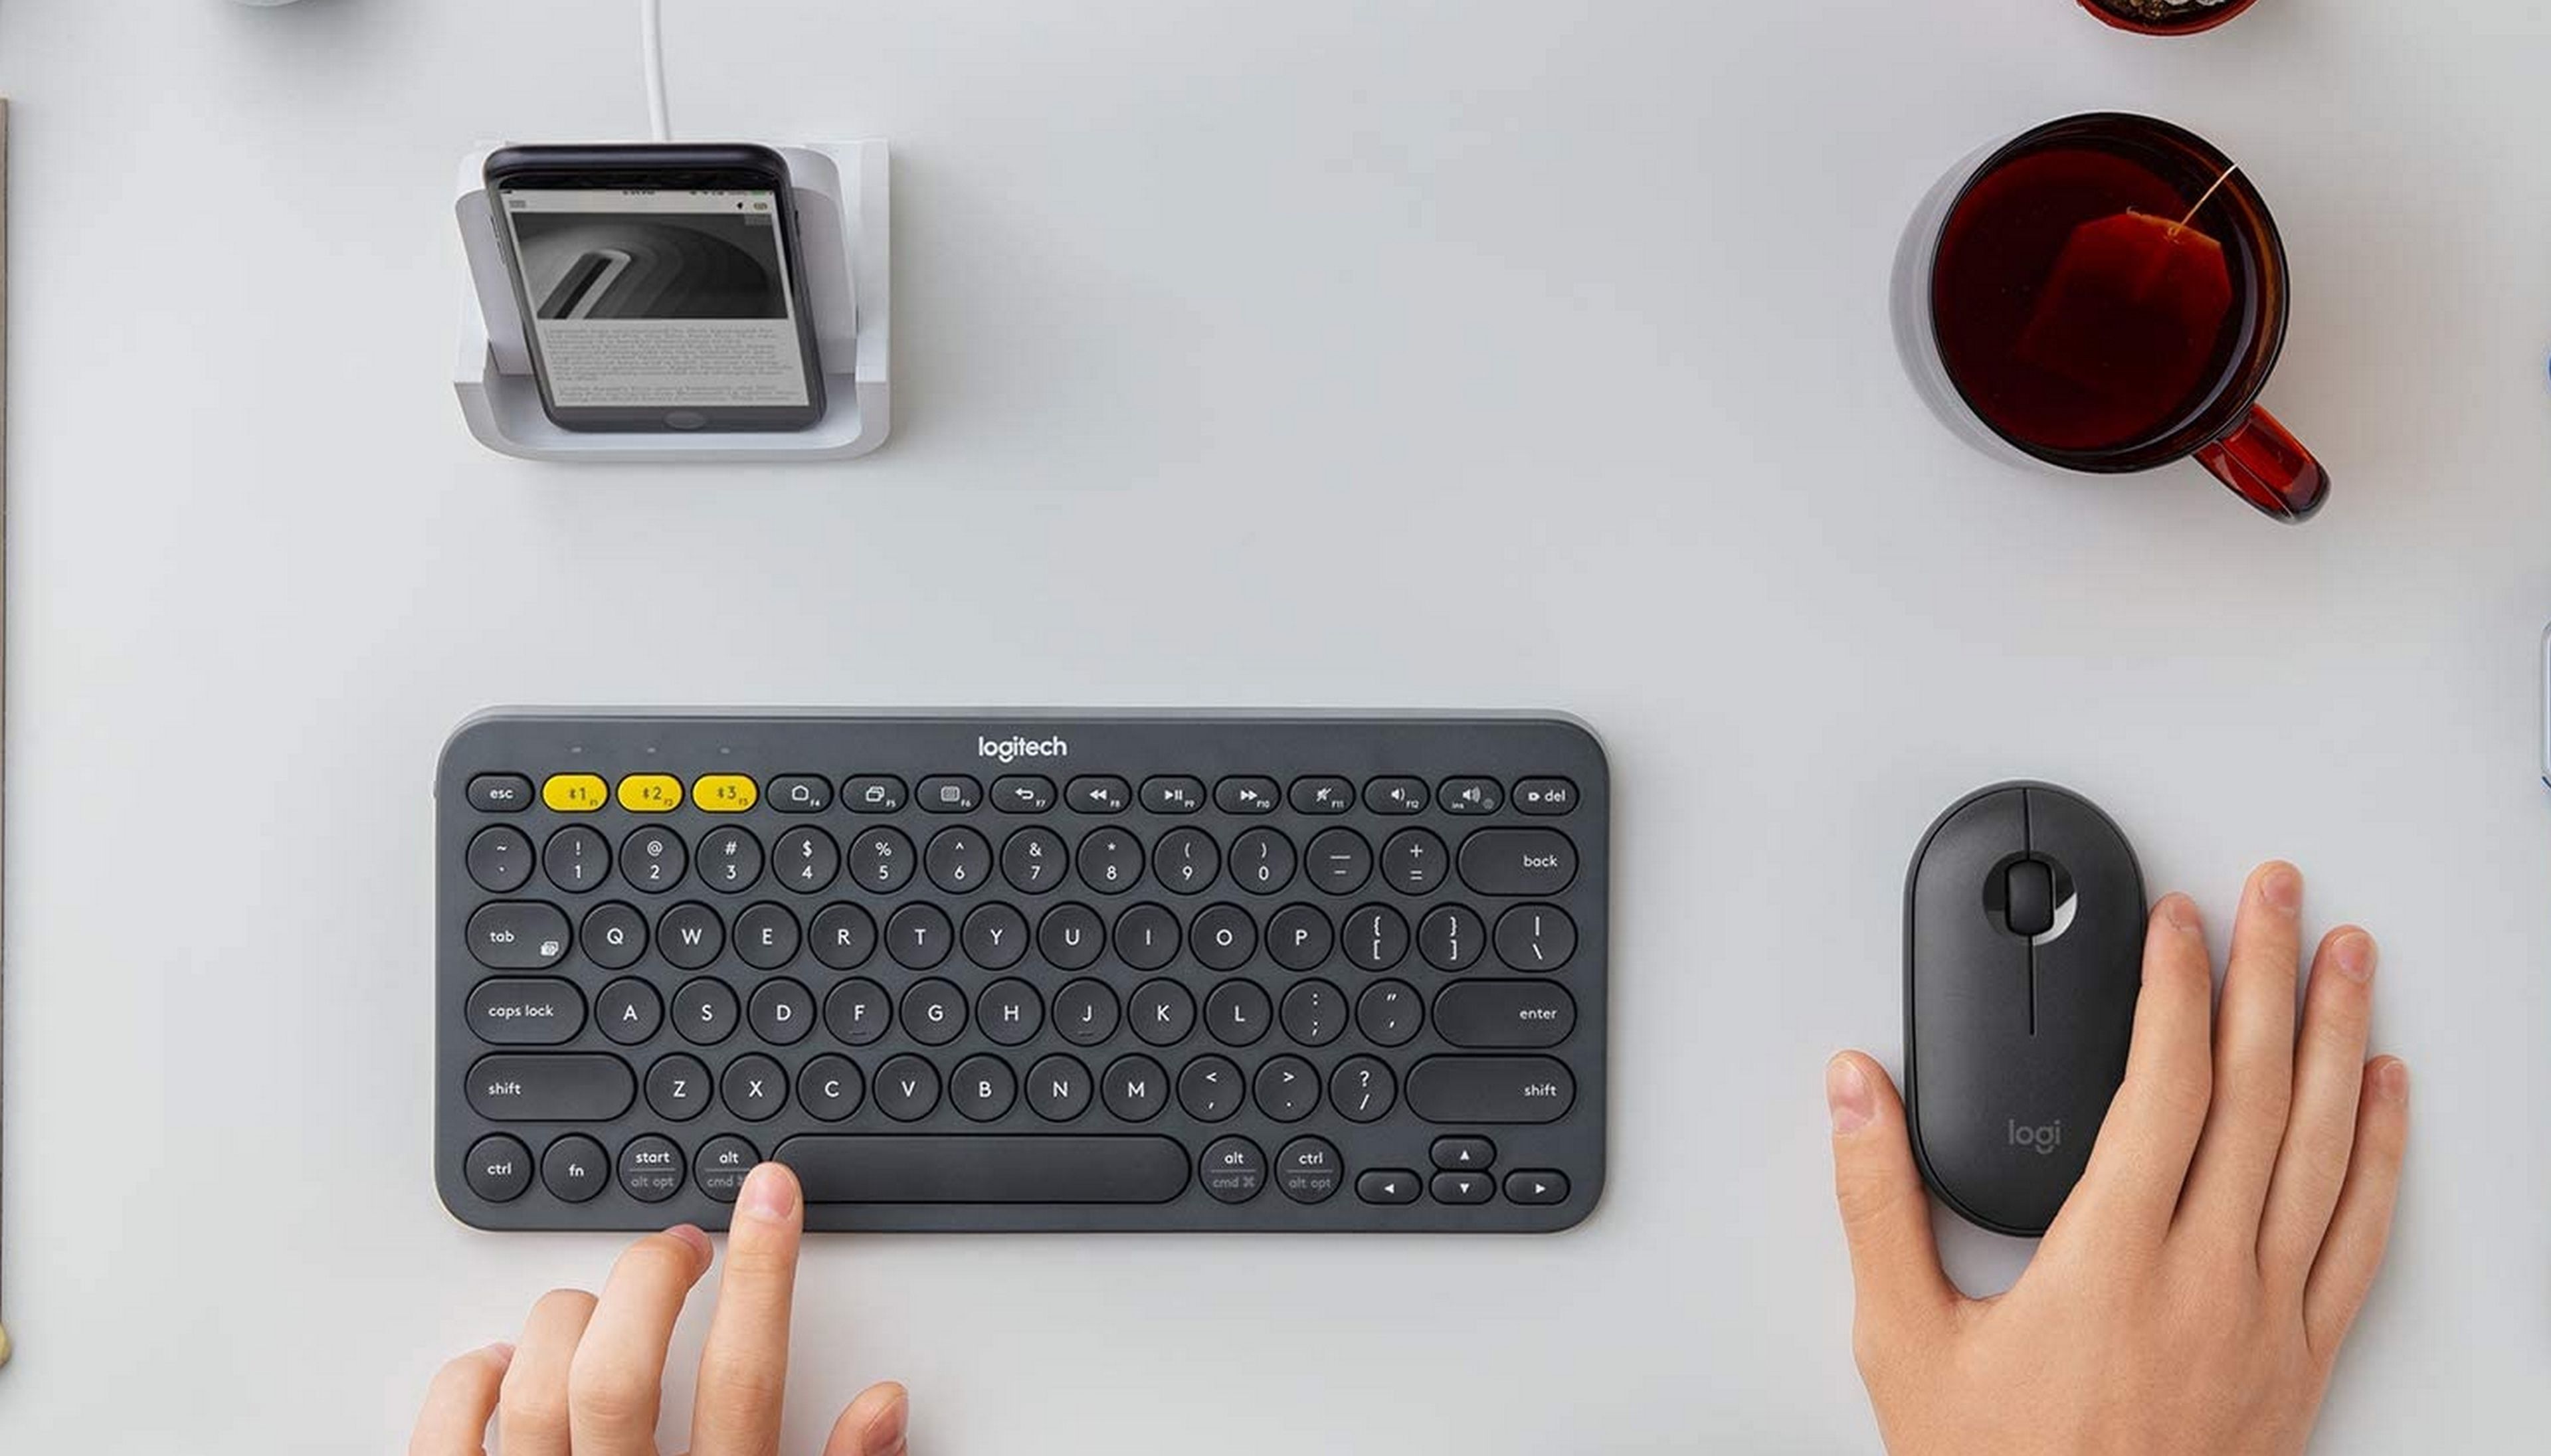 Navega en tu Smart TV con comodidad con este teclado inalámbrico